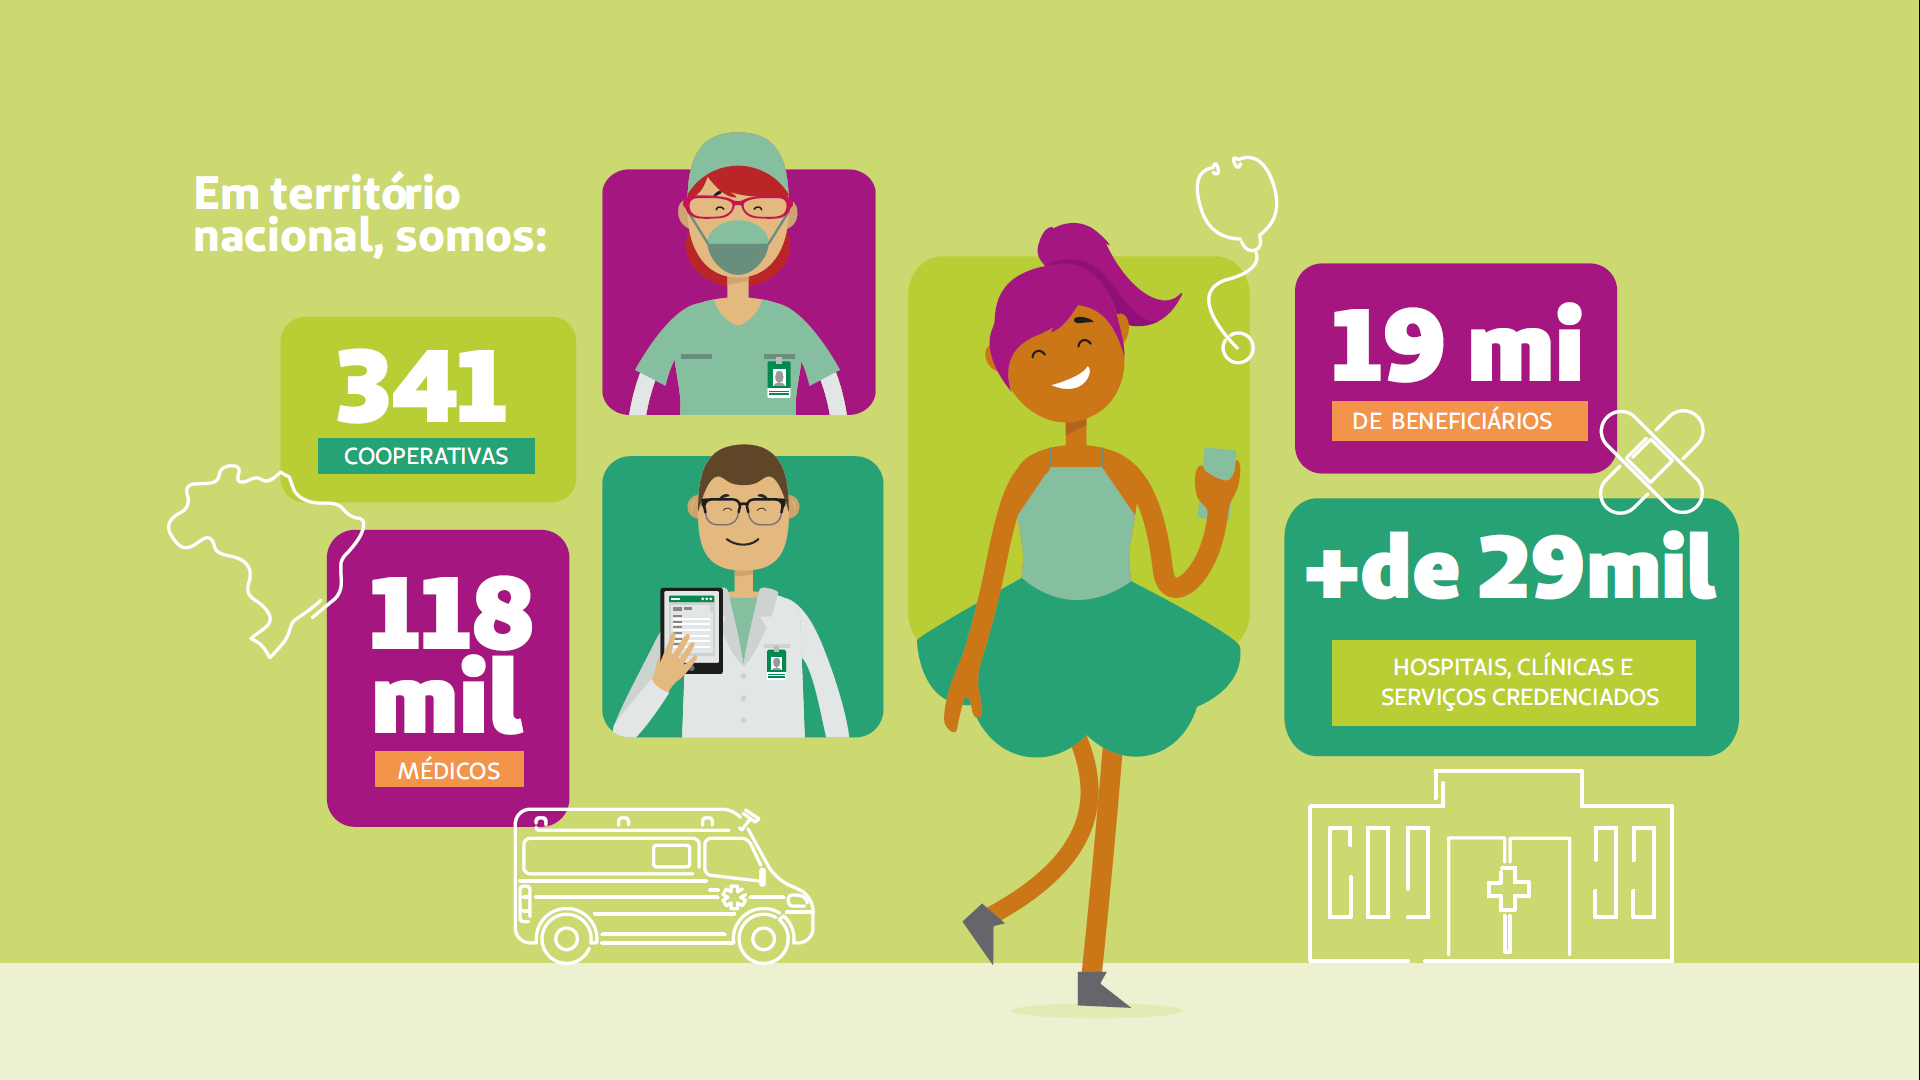 Card apresenta através de ilustrações os números de cooperativas, médicos, beneficiados e prédios da Unimed em todo Brasil